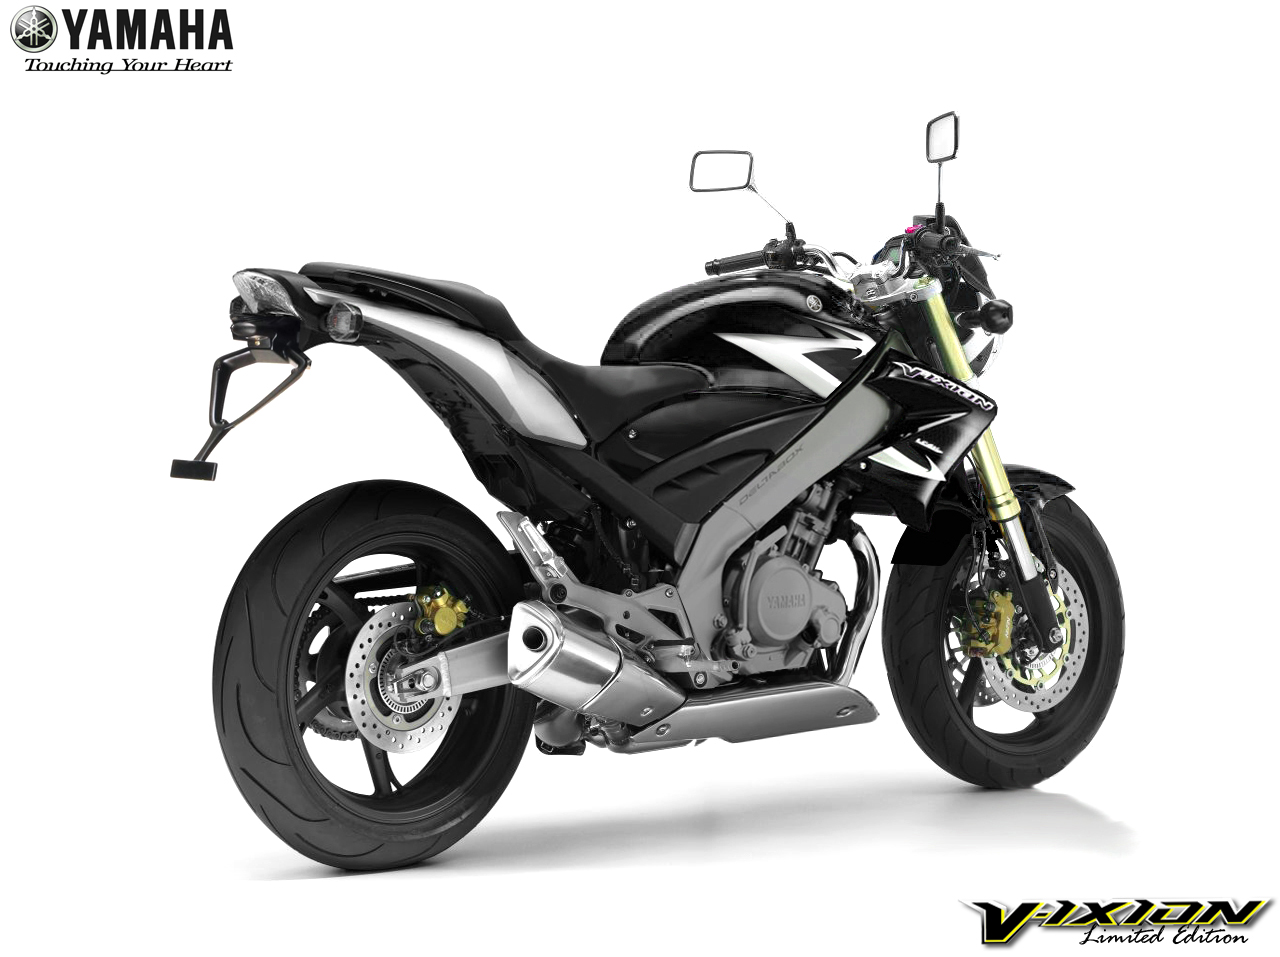  Harga  Pro Daftar  Harga  Motor  Yamaha  Baru  dan Bekas Update 